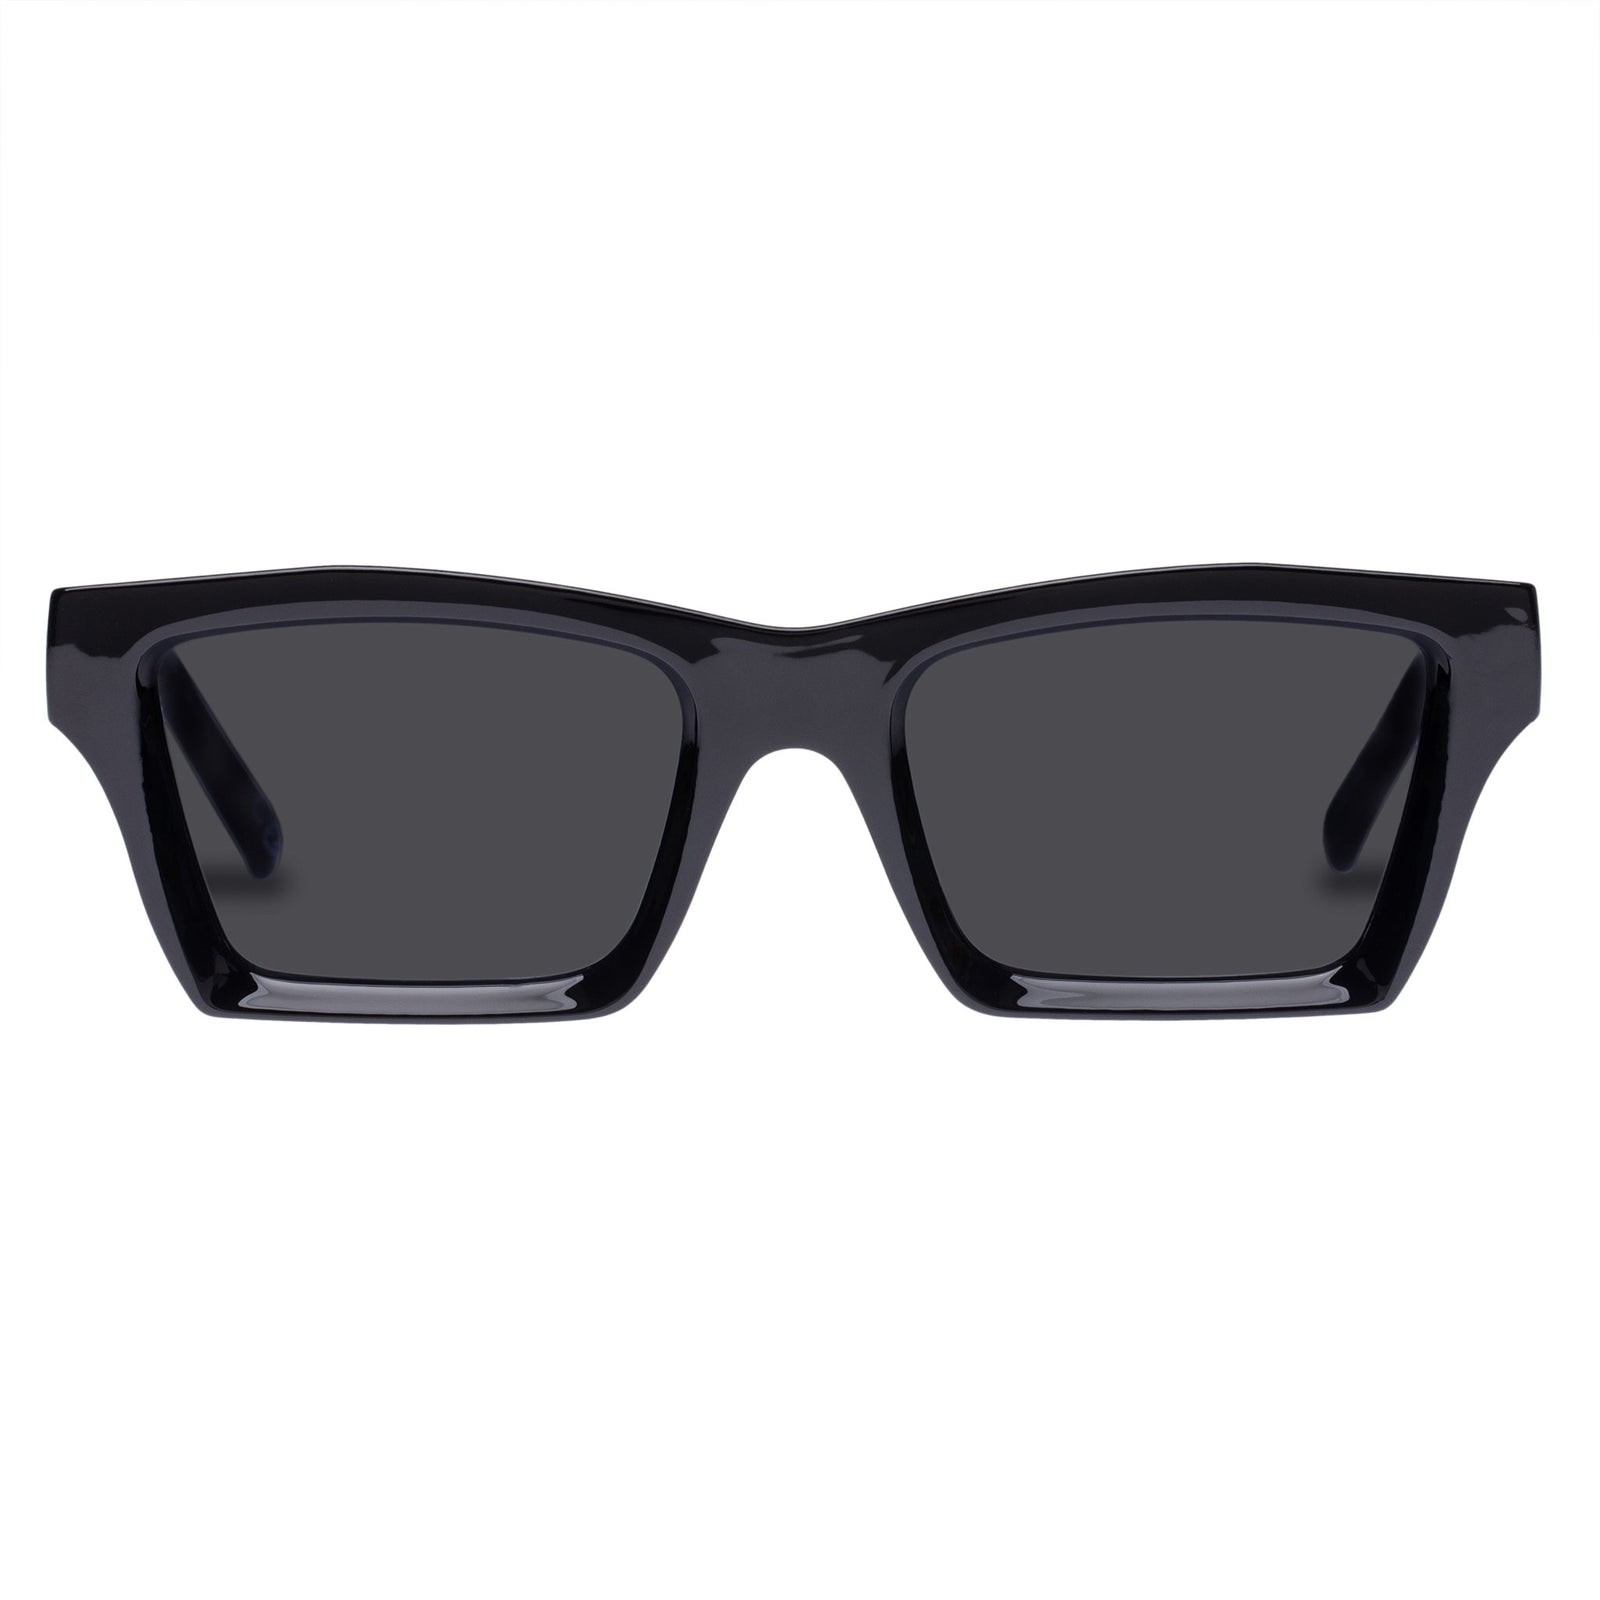 Le Specs Women's The Impeccable Alt Square Frame Black Sunglasses